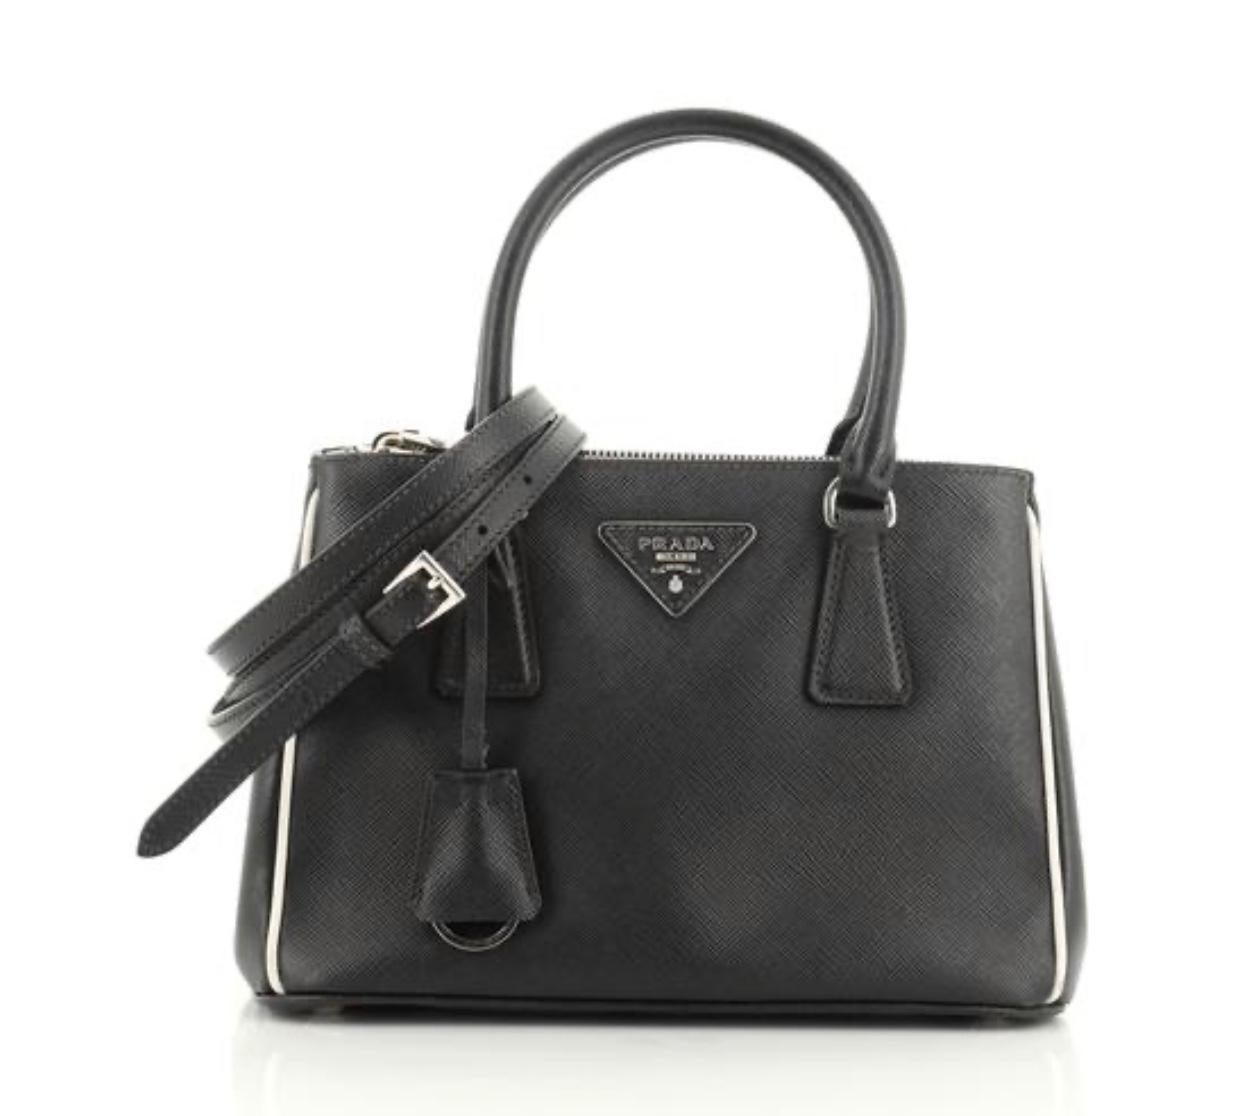 Prada Saffiano Small Lux Double-Zip Tote Bag, Black (Nero)